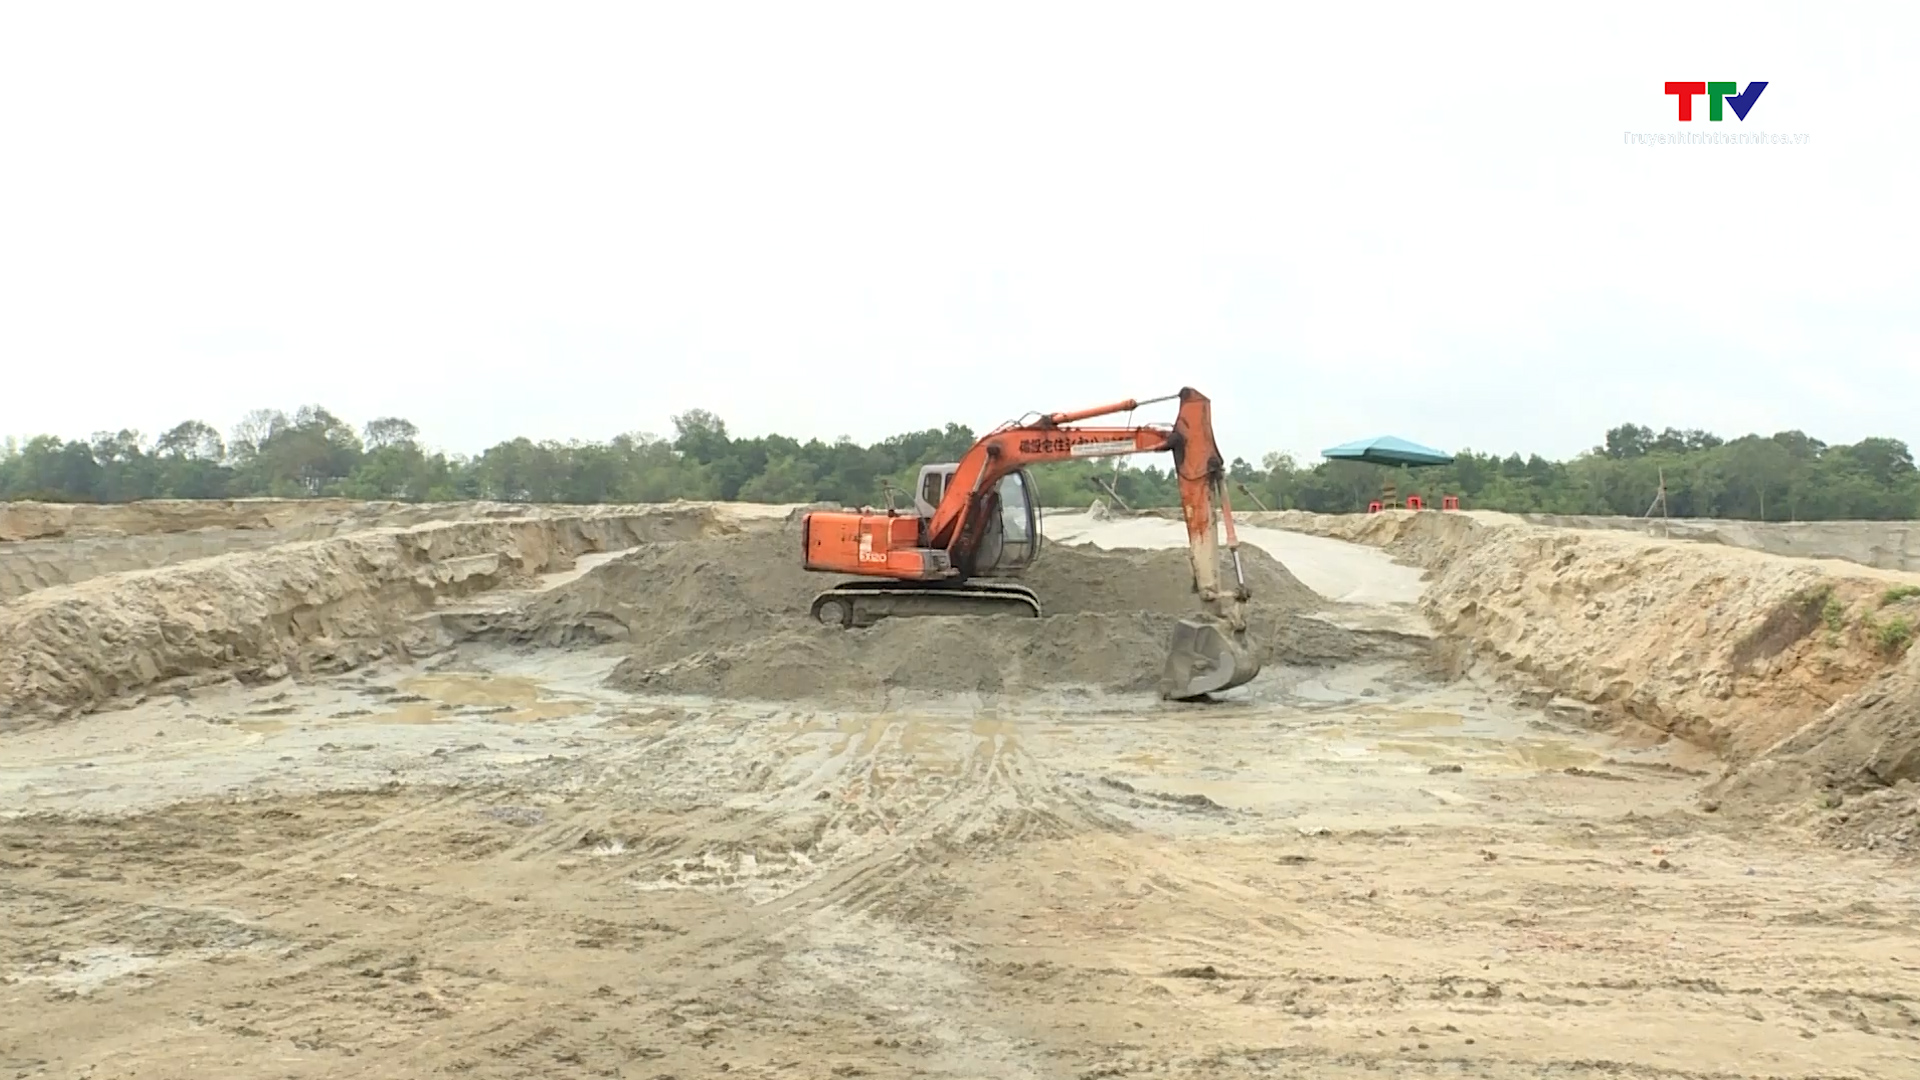 Huyện Thiệu Hoá tăng cường quản lý nhà nước đối với các bến thuỷ nội địa và các bãi tập kết cát  - Ảnh 4.